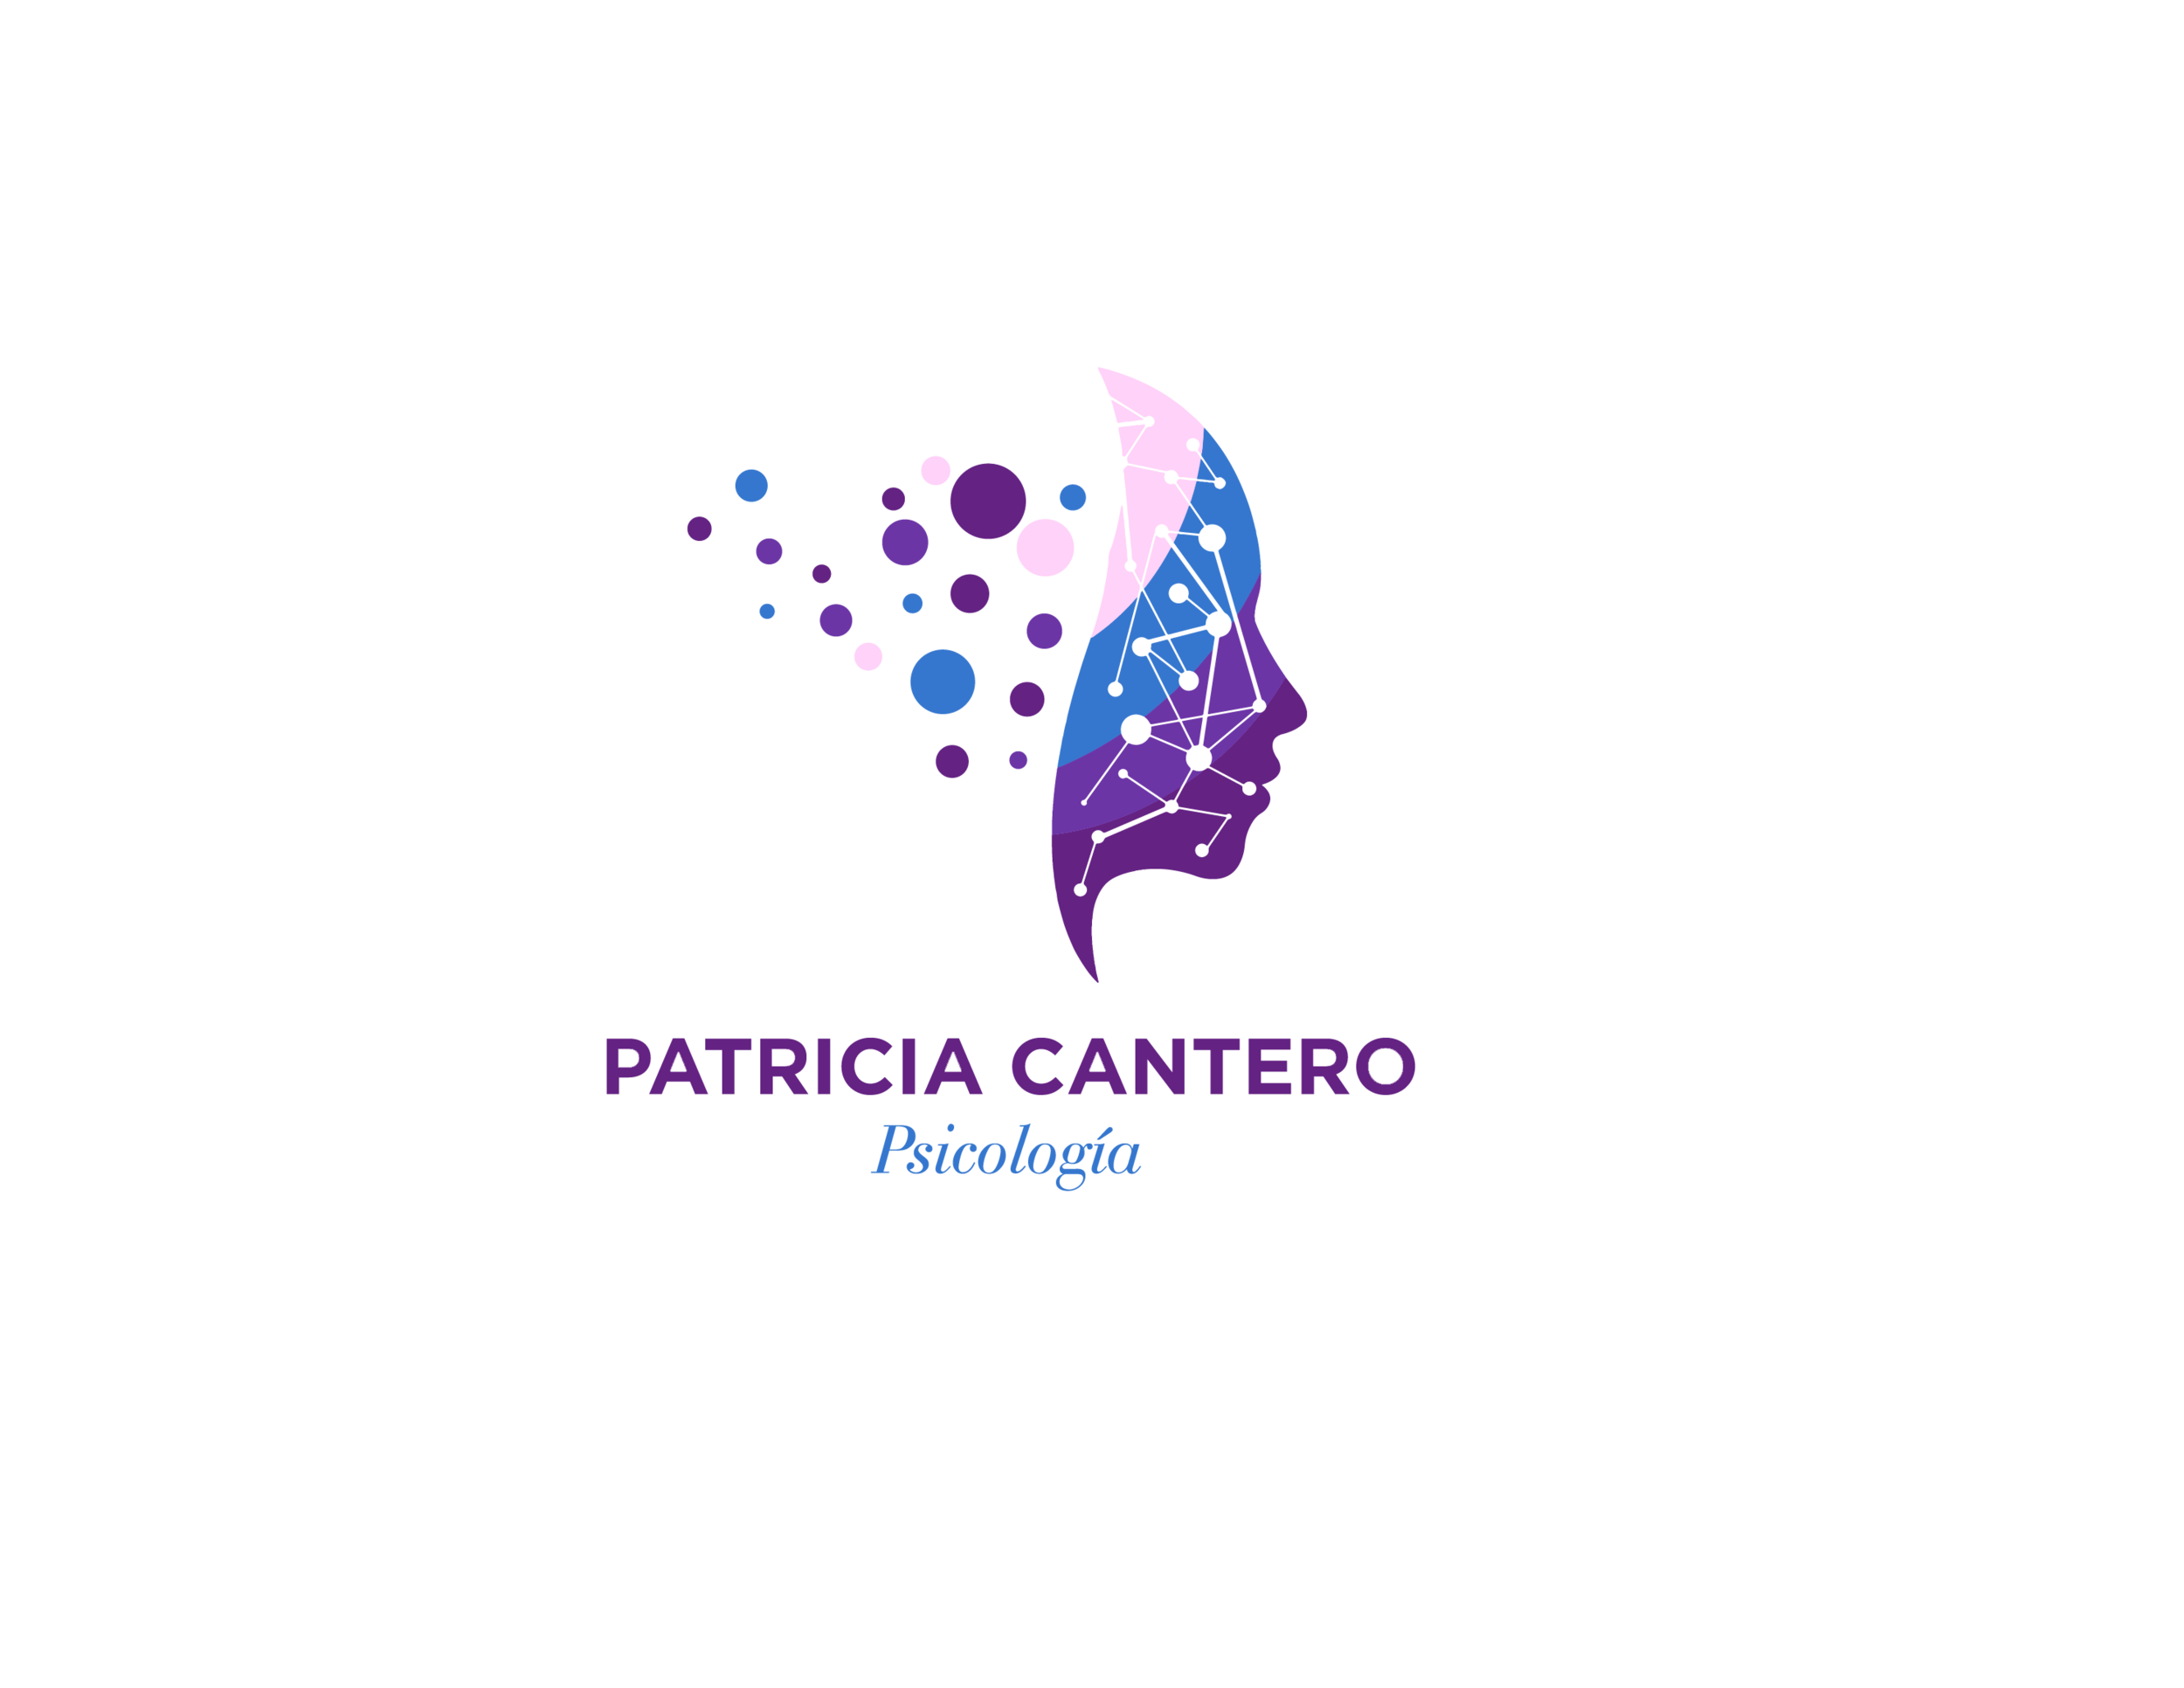 CUENTO-TERAPIA -. ¿𝙰 𝚀𝚄É 𝚂𝙰𝙱𝙴 𝙻𝙰 𝙻𝚄𝙽𝙰? — Patricia Cantero